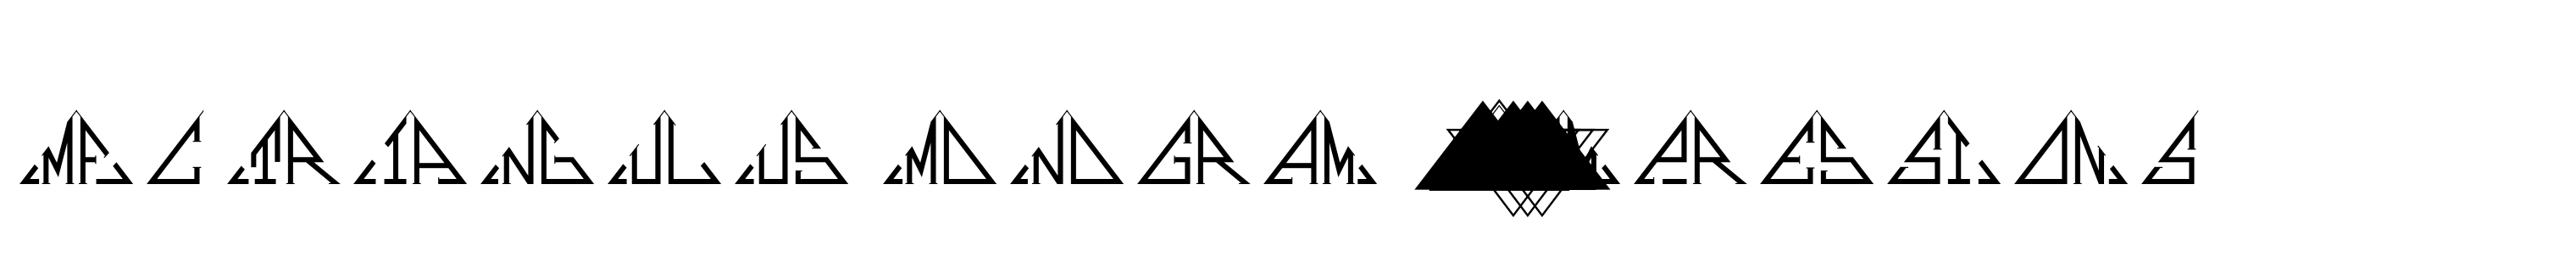 MFC Triangulus Monogram 25000 Impressions